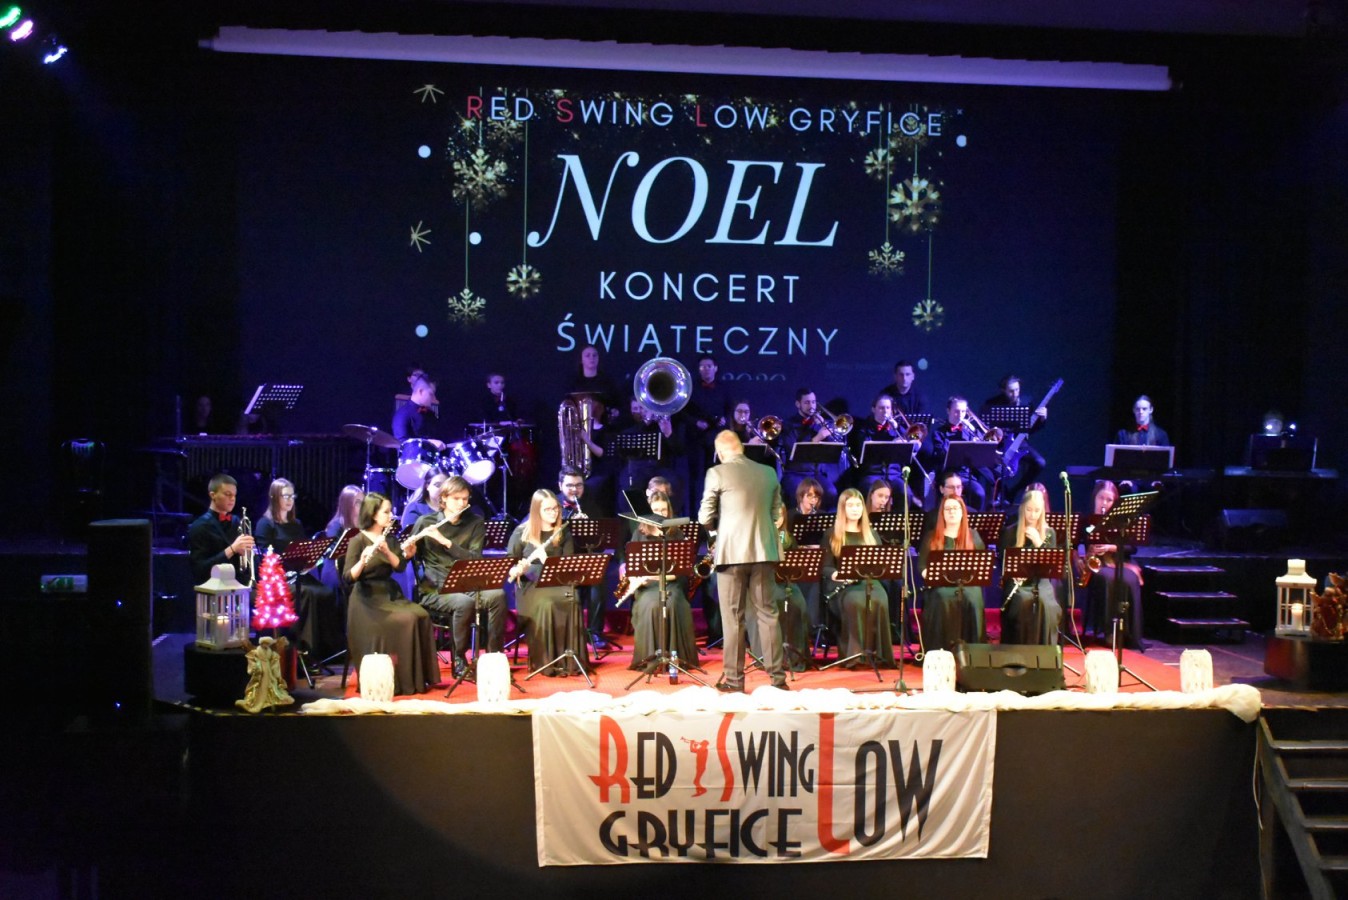 Koncert Świąteczny NOEL w wykonaniu Red Swing Low